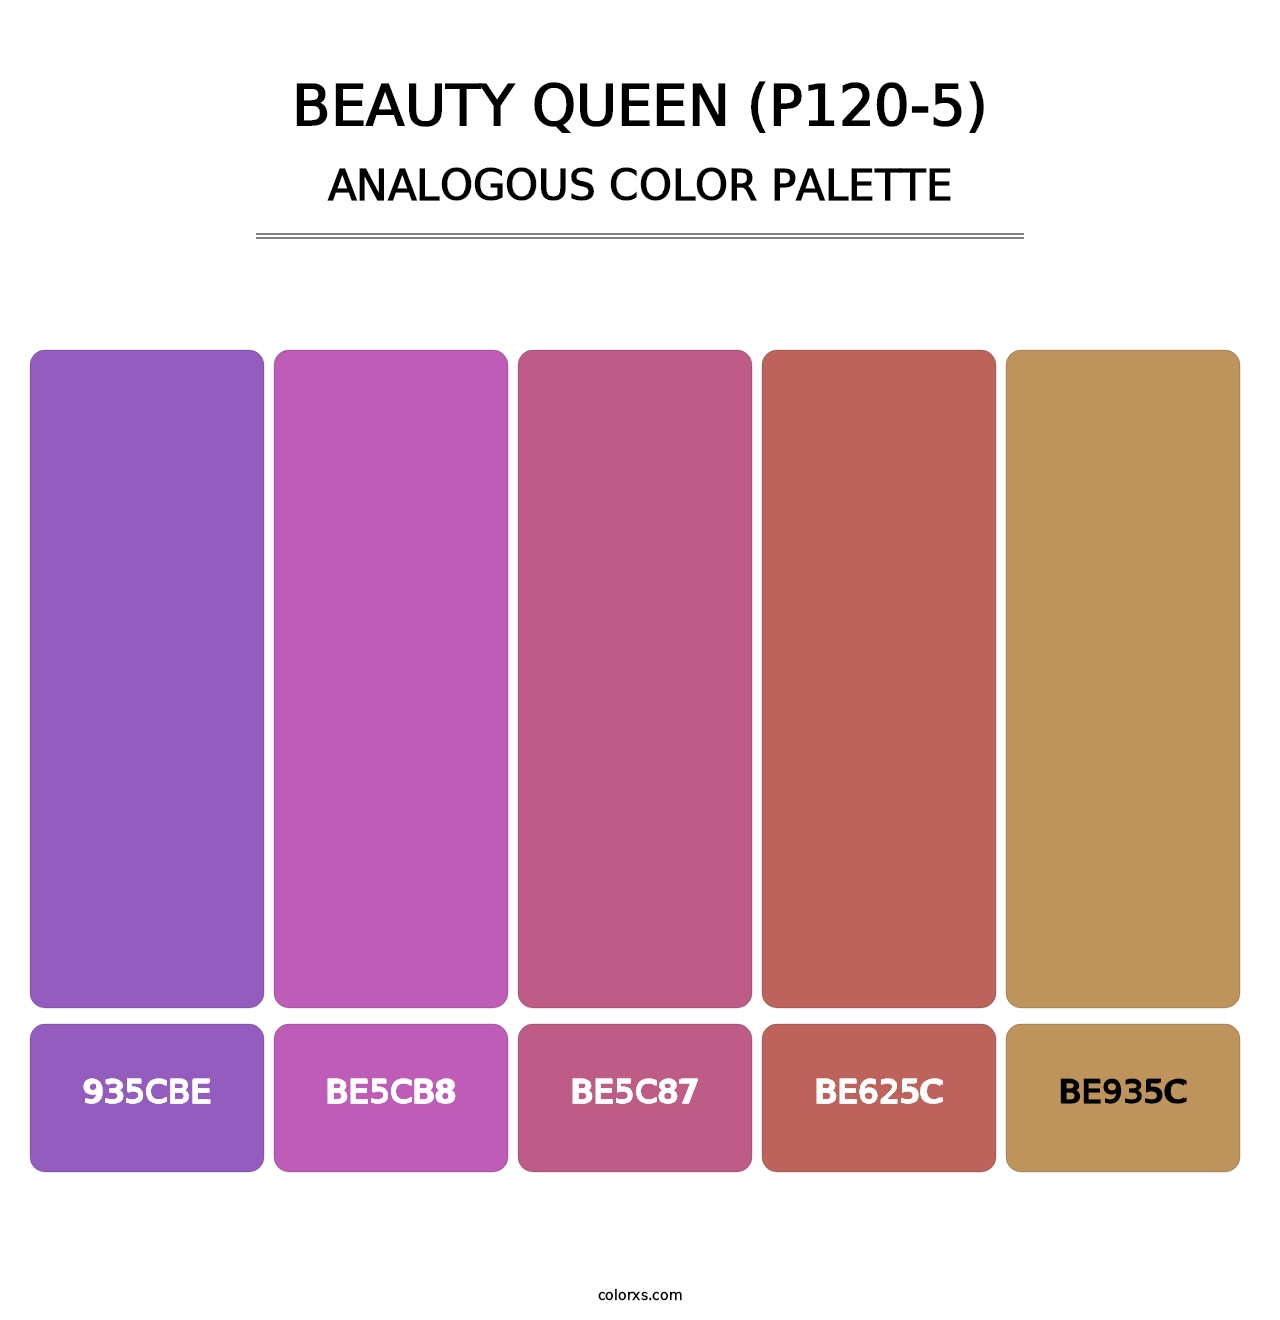 Beauty Queen (P120-5) - Analogous Color Palette